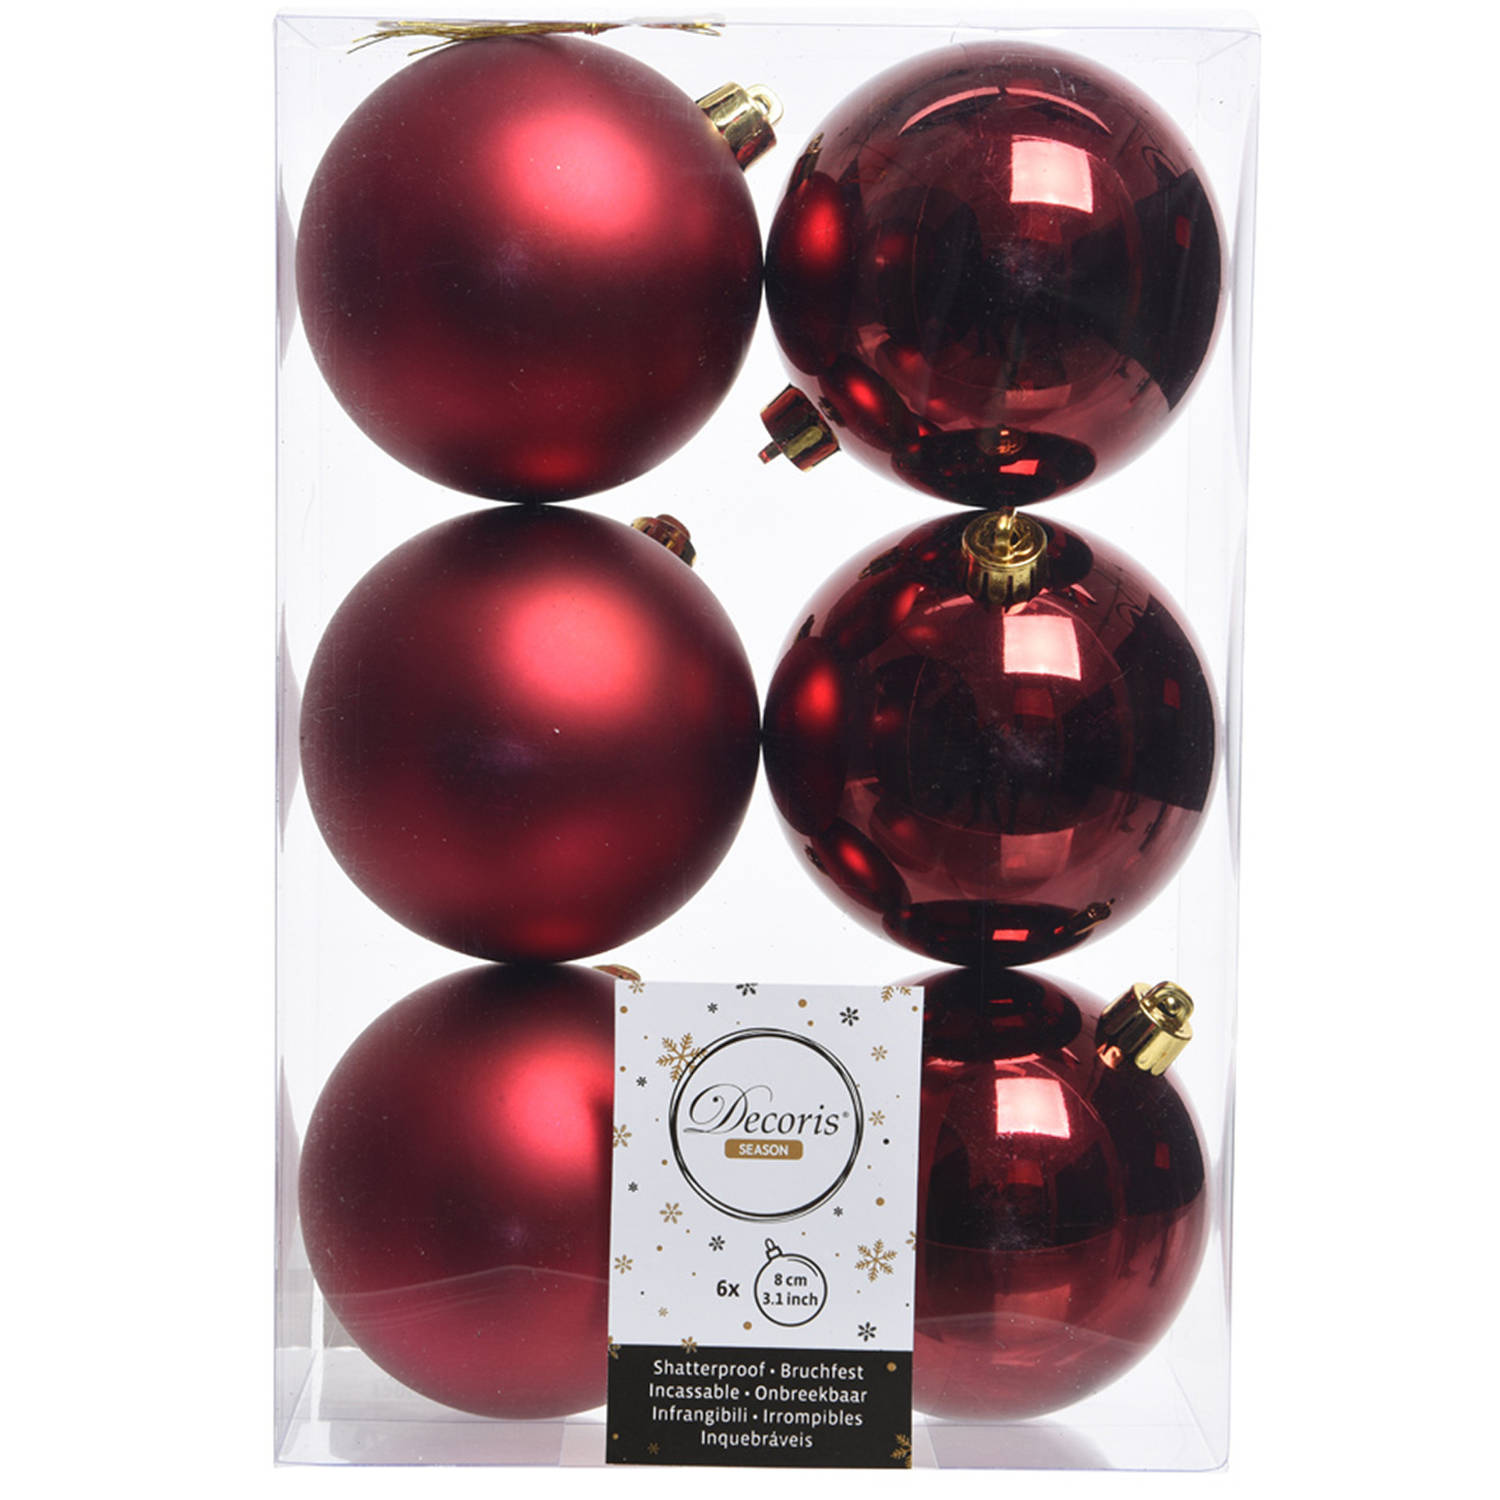 Kerstboom decoratie kerstballen mix donker rood 6 stuks